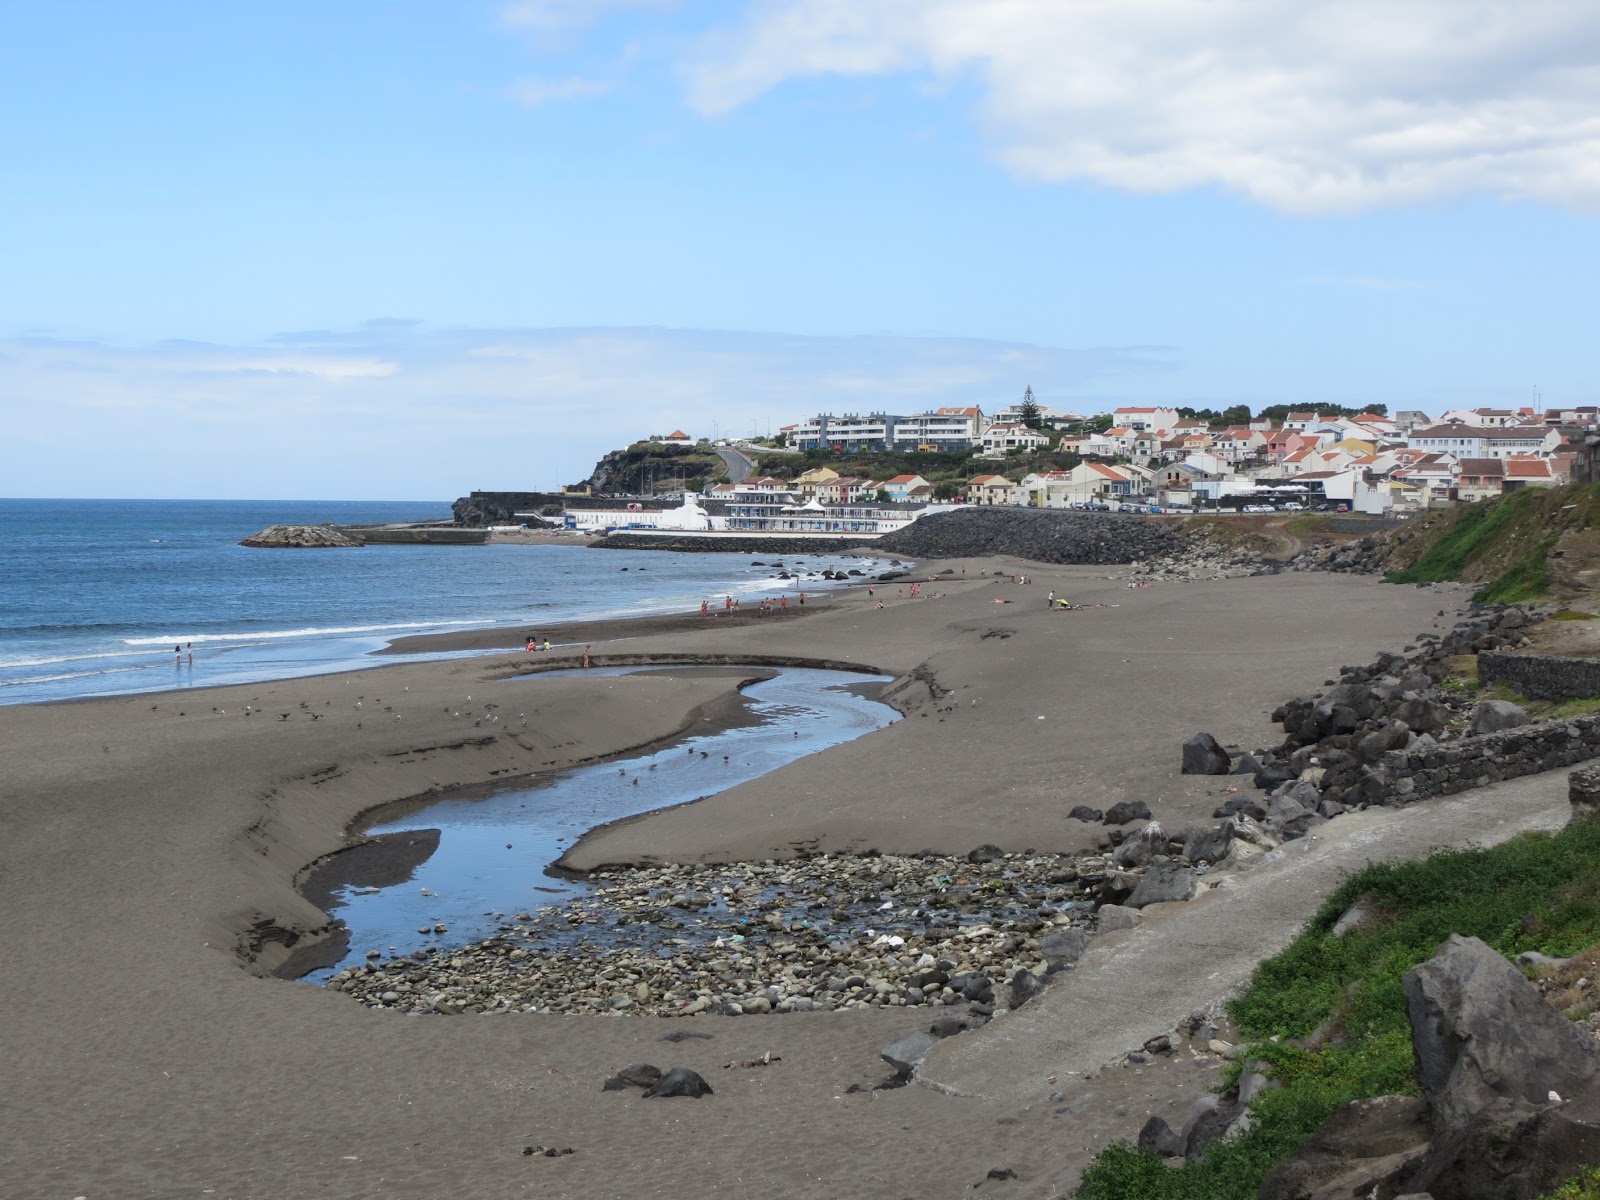 Praia do Monte Verde'in fotoğrafı geniş plaj ile birlikte